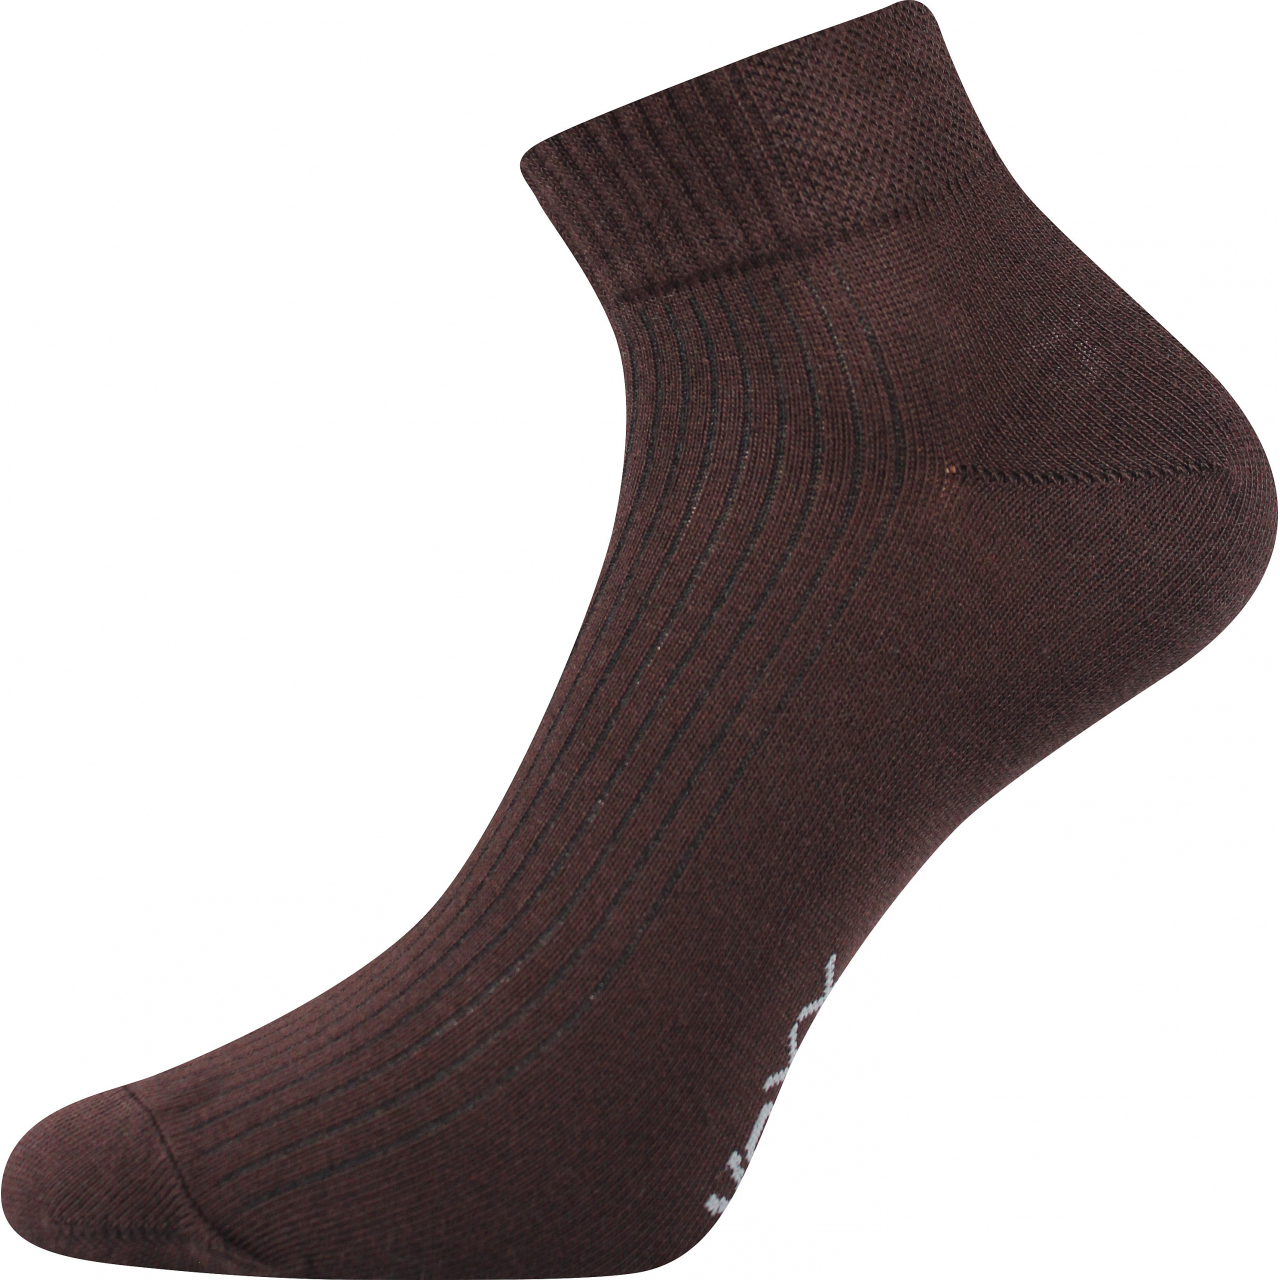 Ponožky sportovní Voxx Setra - hnědé, 43-46